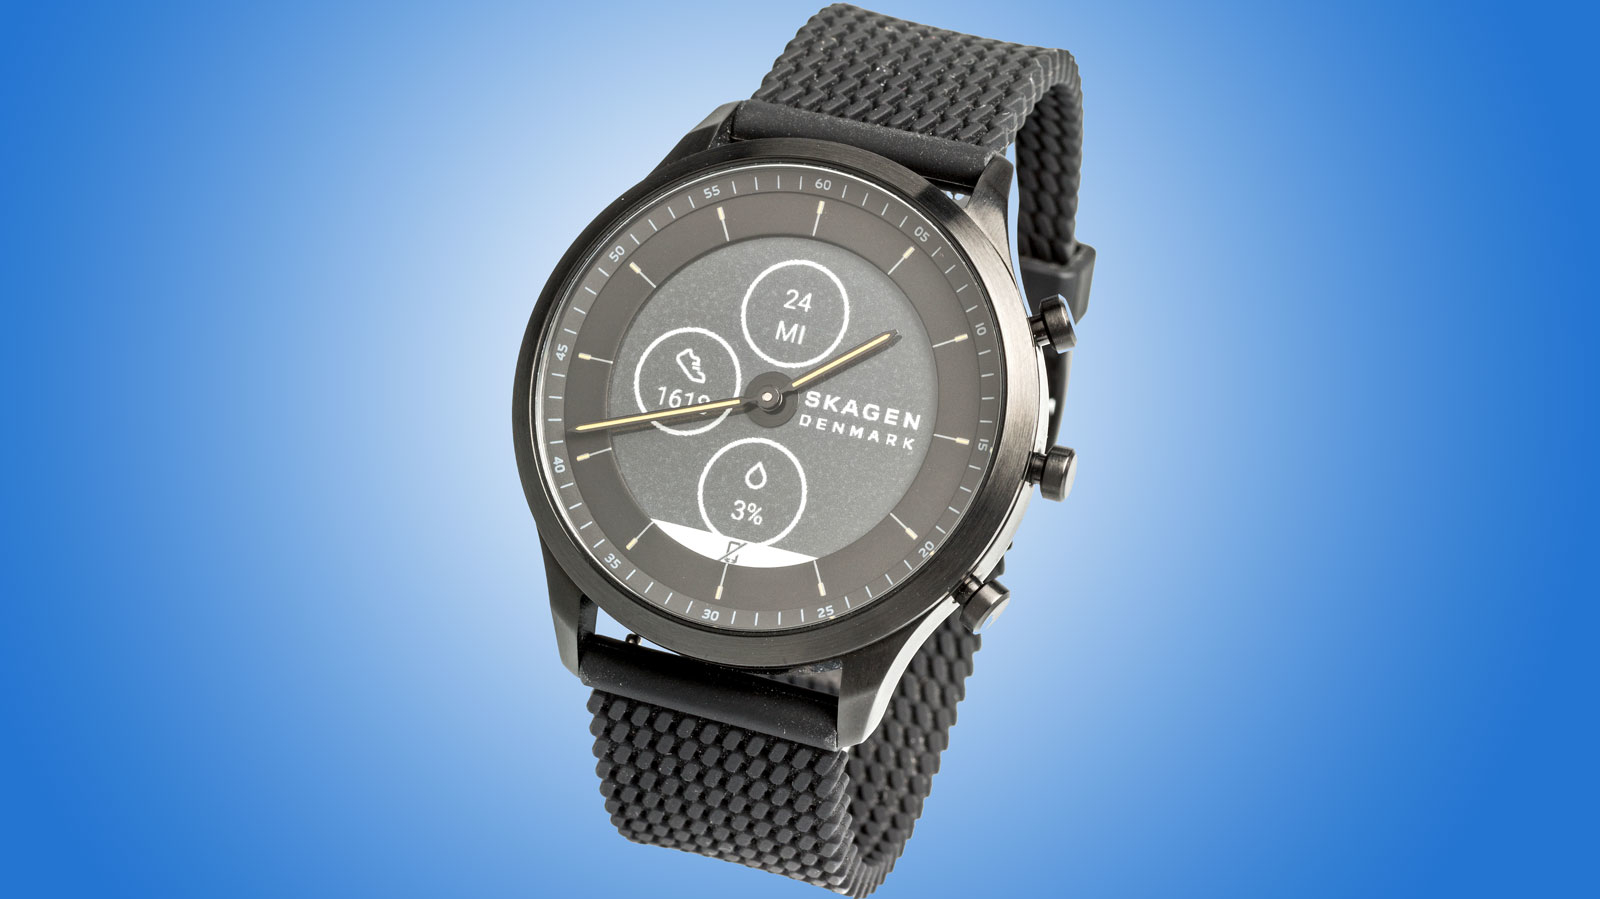 Smartwatch: Hybriduhr von Skagen mit E-Paper-Display im Test | heise online